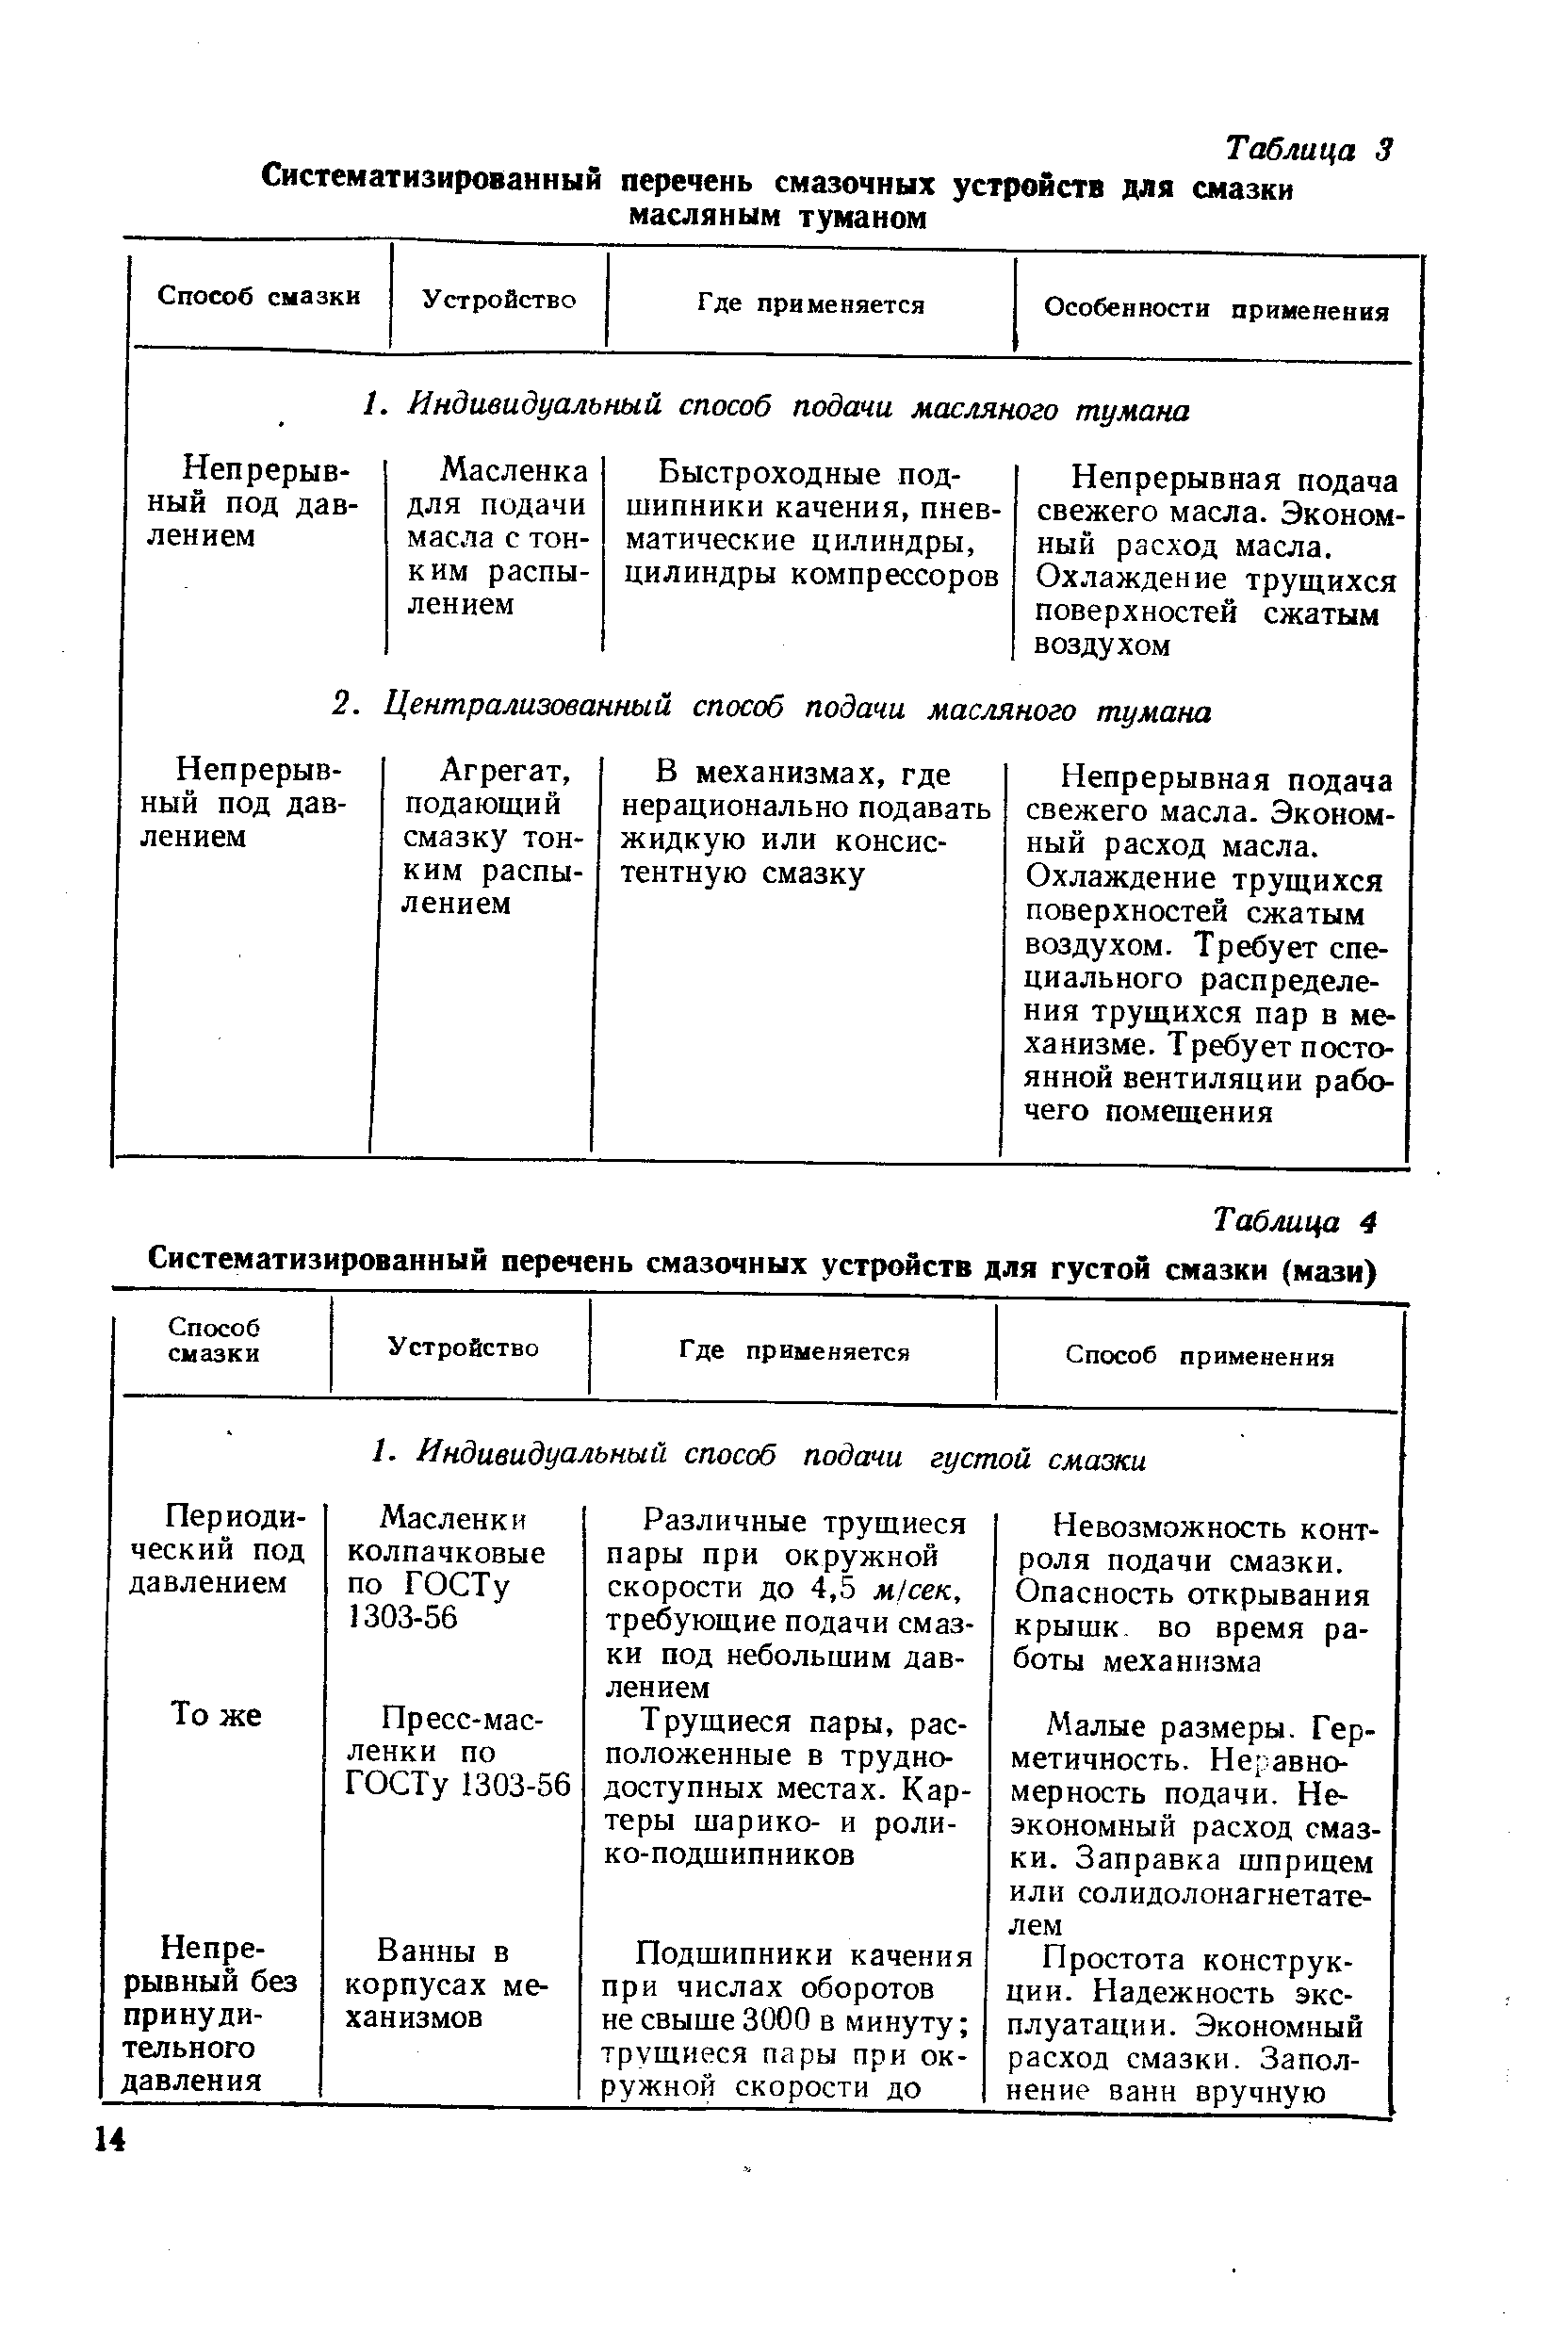 Таблица 4 Систематизированный перечень смазочных устройств для густой смазки (мази) 
